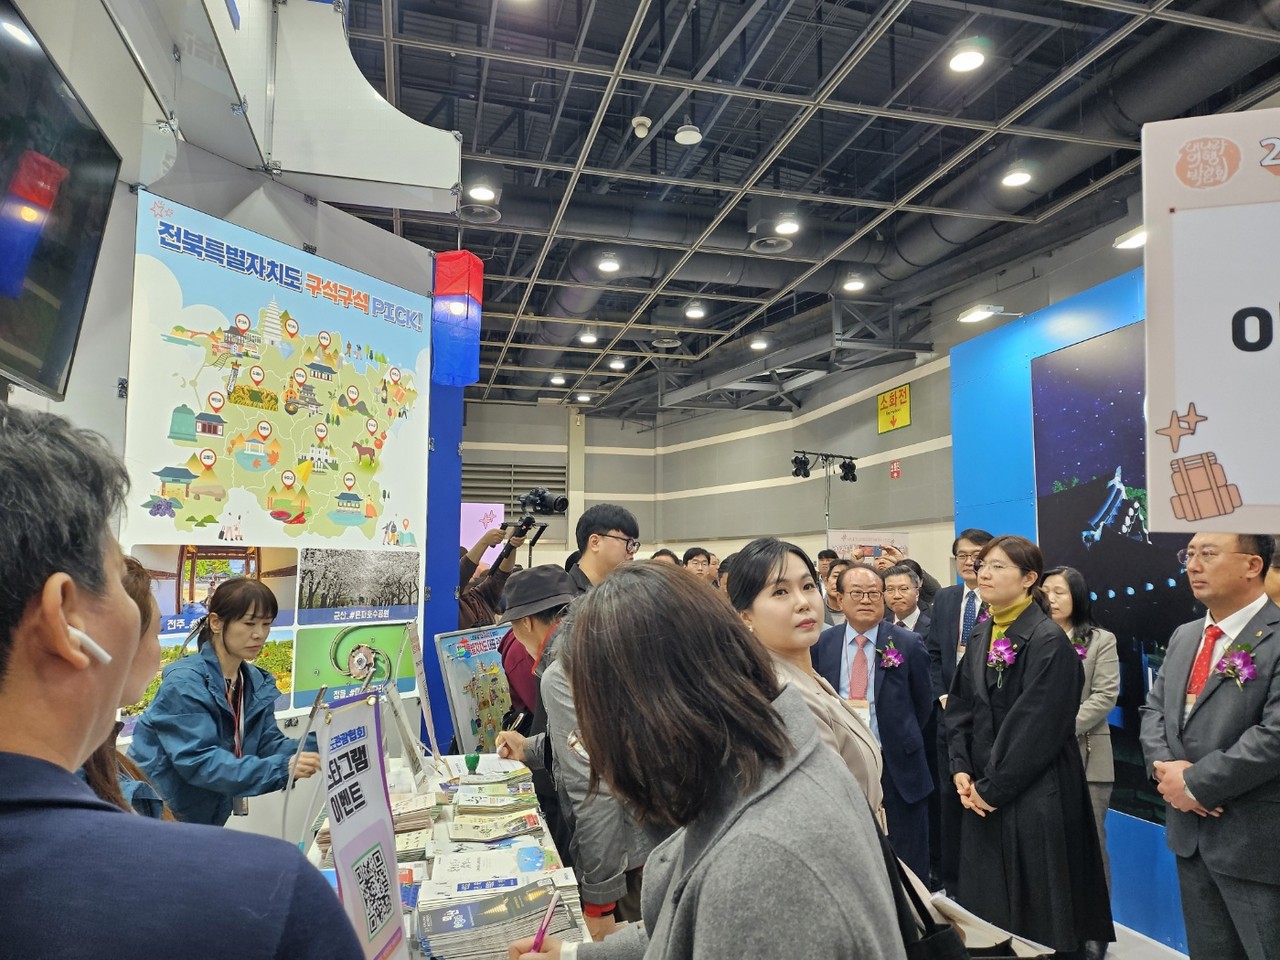 문체부 장미란 제2차관은 28일 오전 11시에 열리는 개막식에 참석해 박람회 개막을 축하하고 전북특별자치도 홍보관 방문해 관계자들을 격려했다.